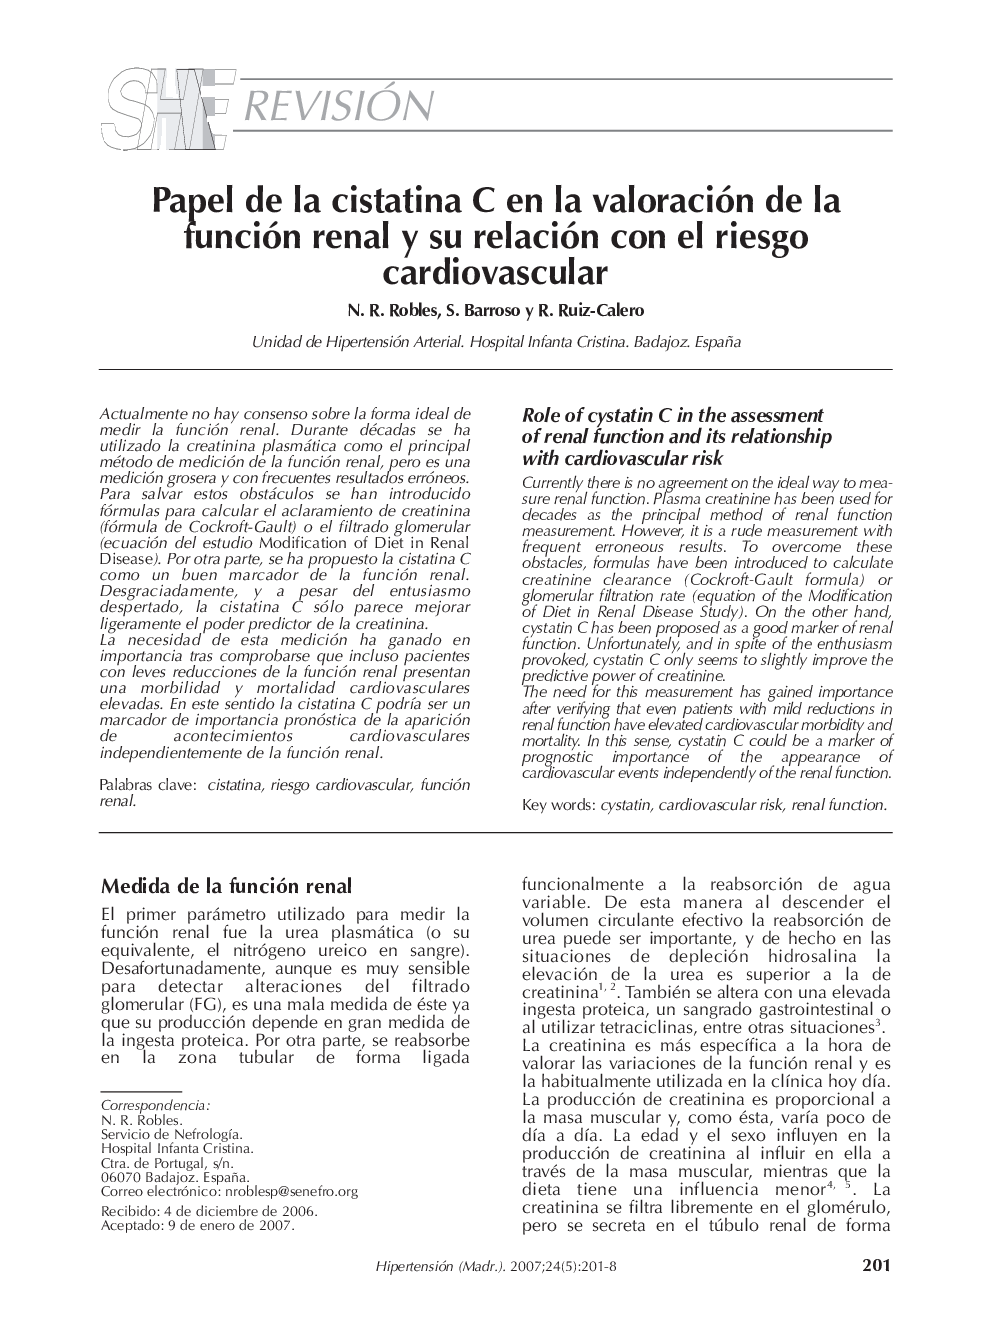 Papel de la cistatina C en la valoración de la función renal y su relación con el riesgo cardiovascular